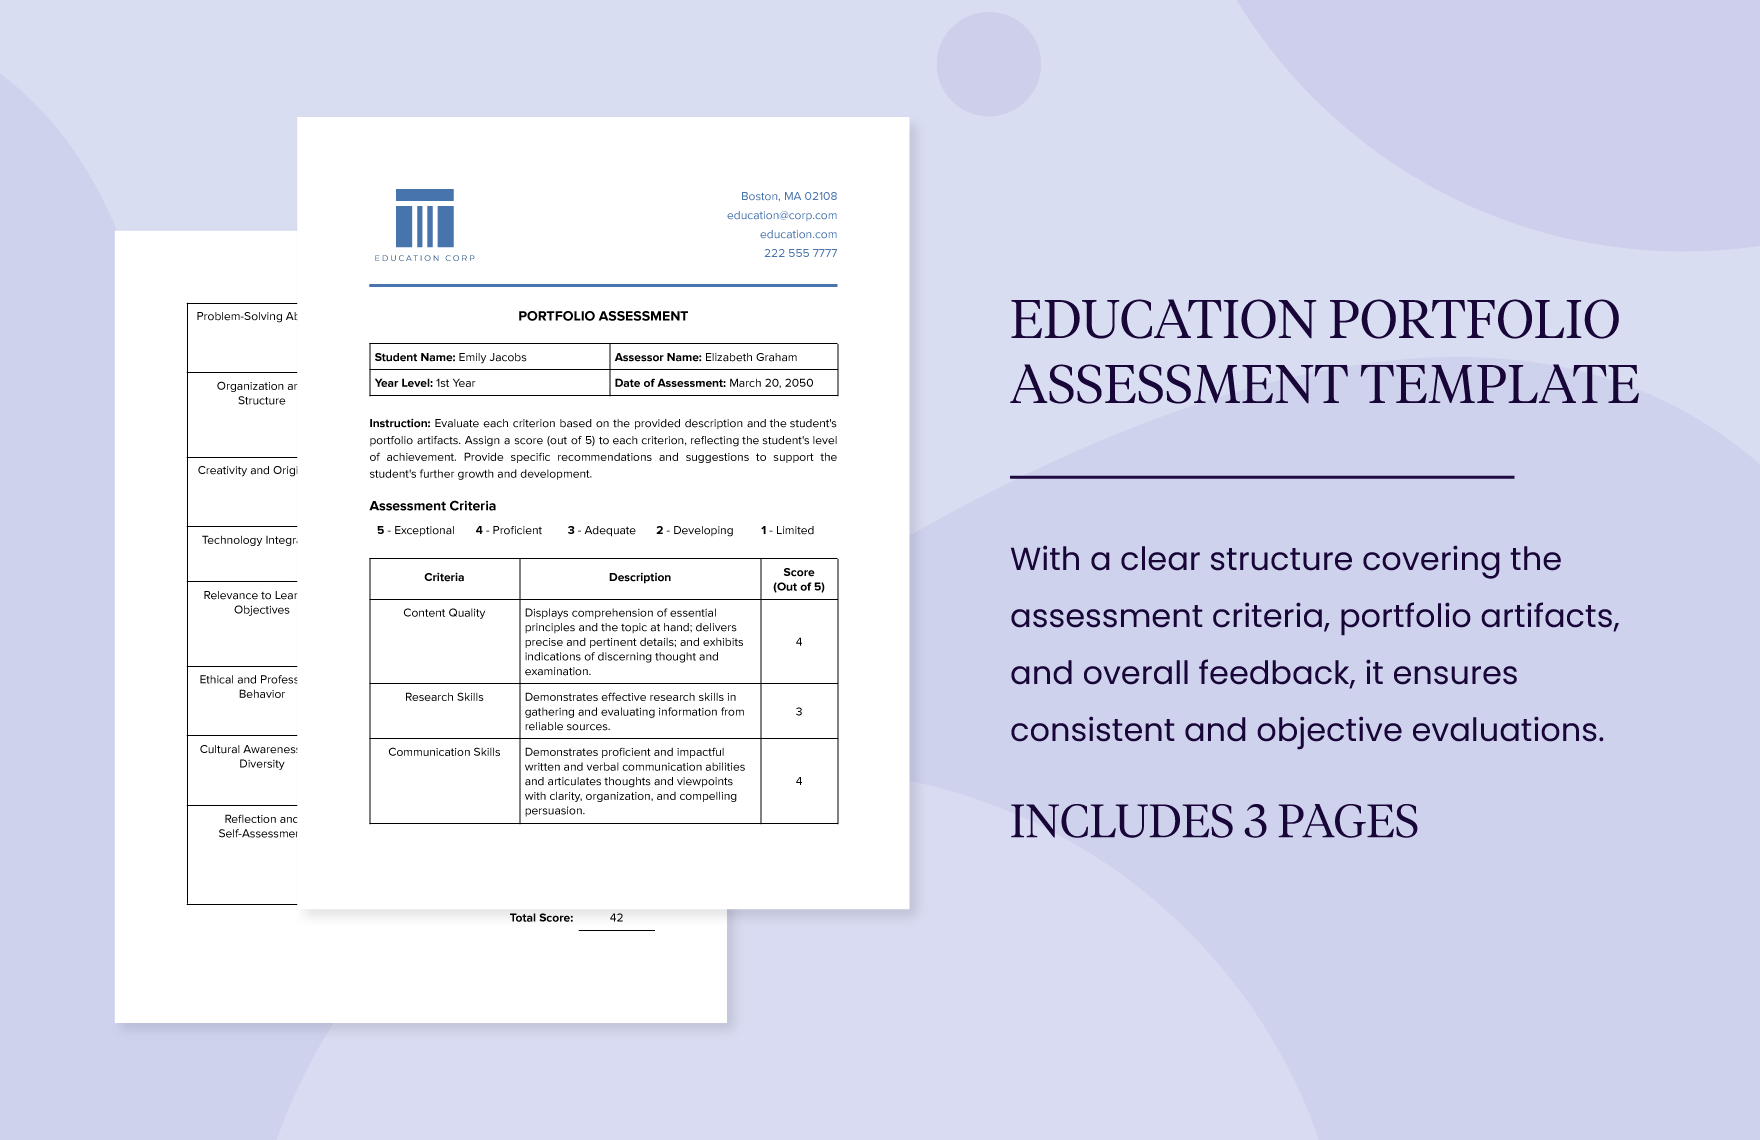 portfolio assessment in education